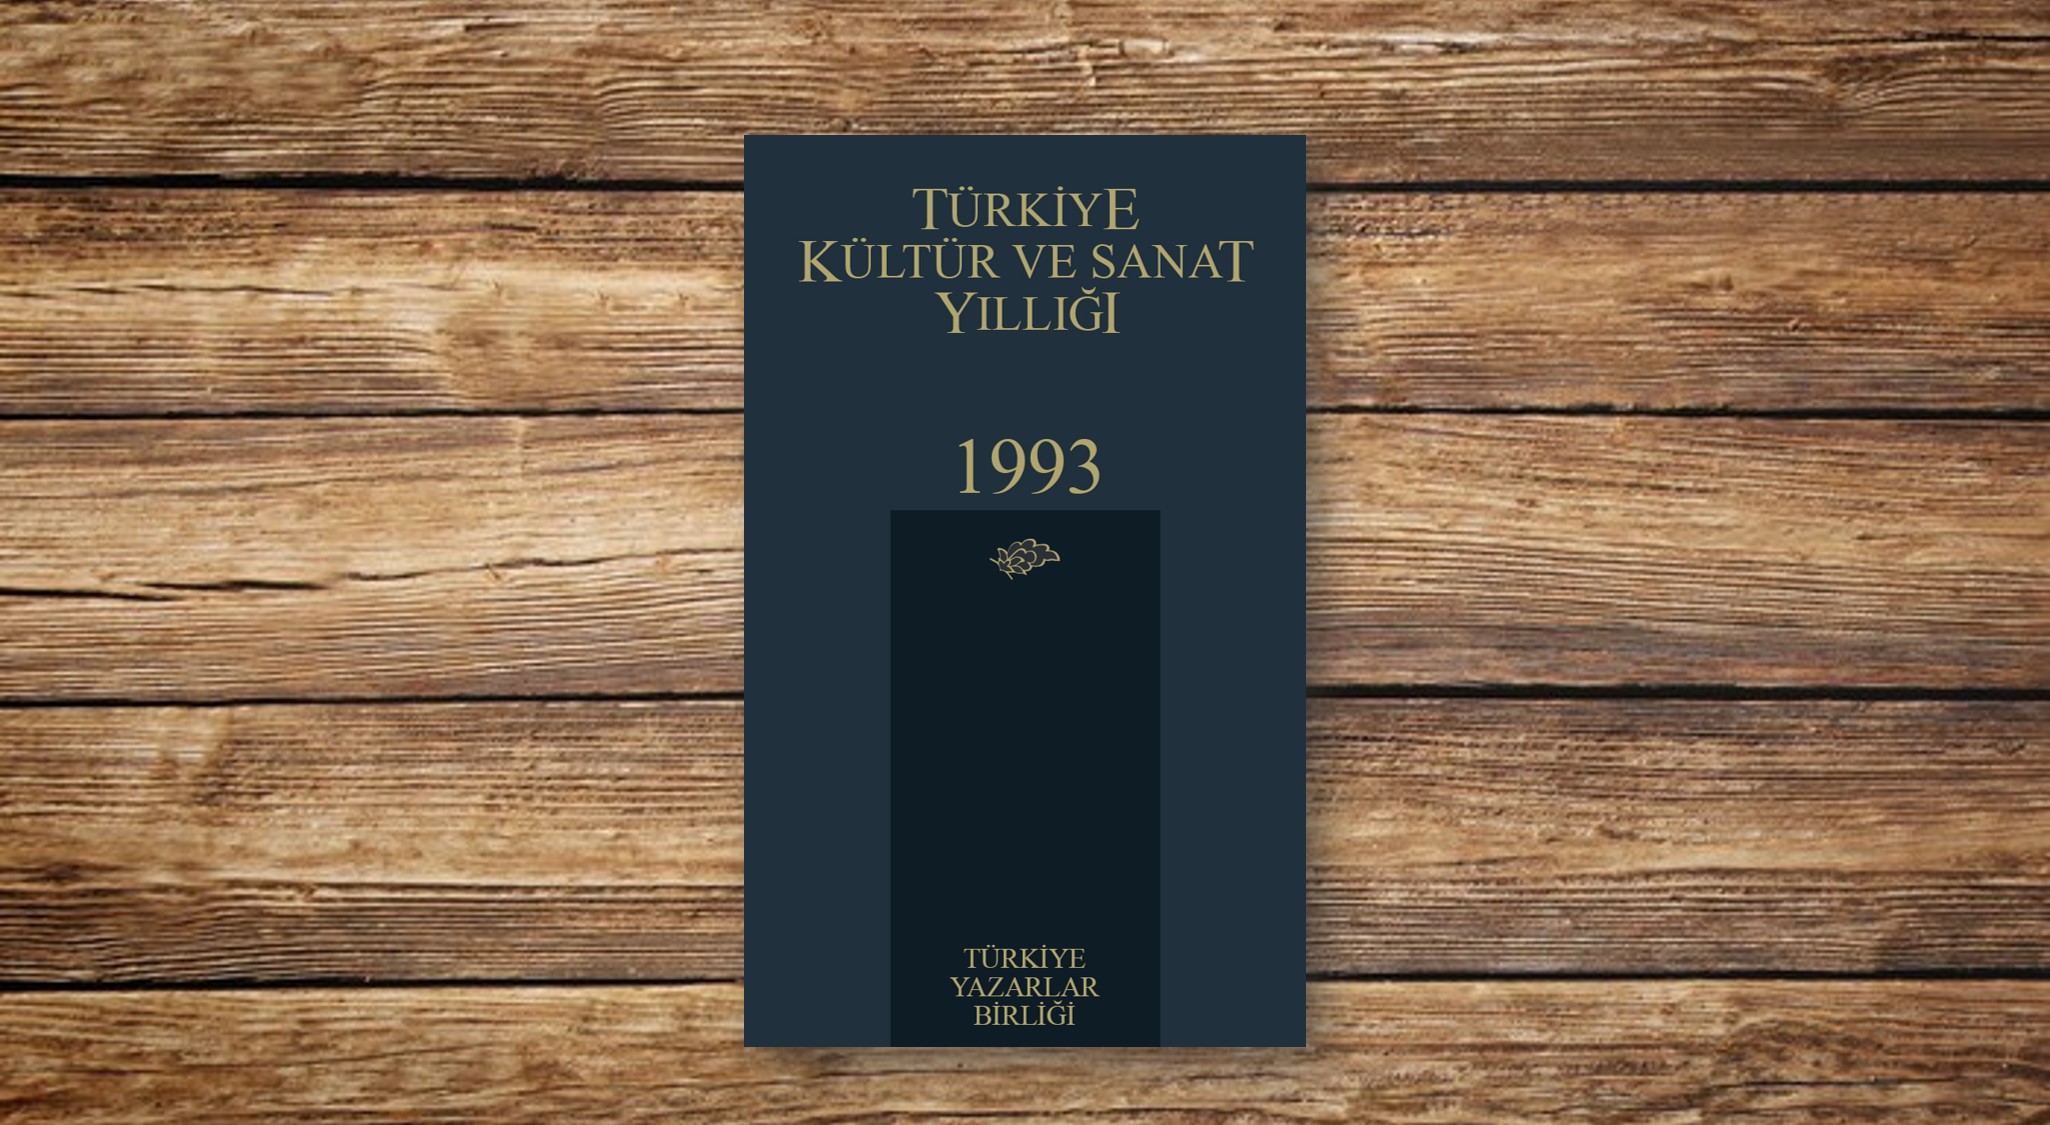 Türkiye Kültür ve Sanat Yıllığı 1993